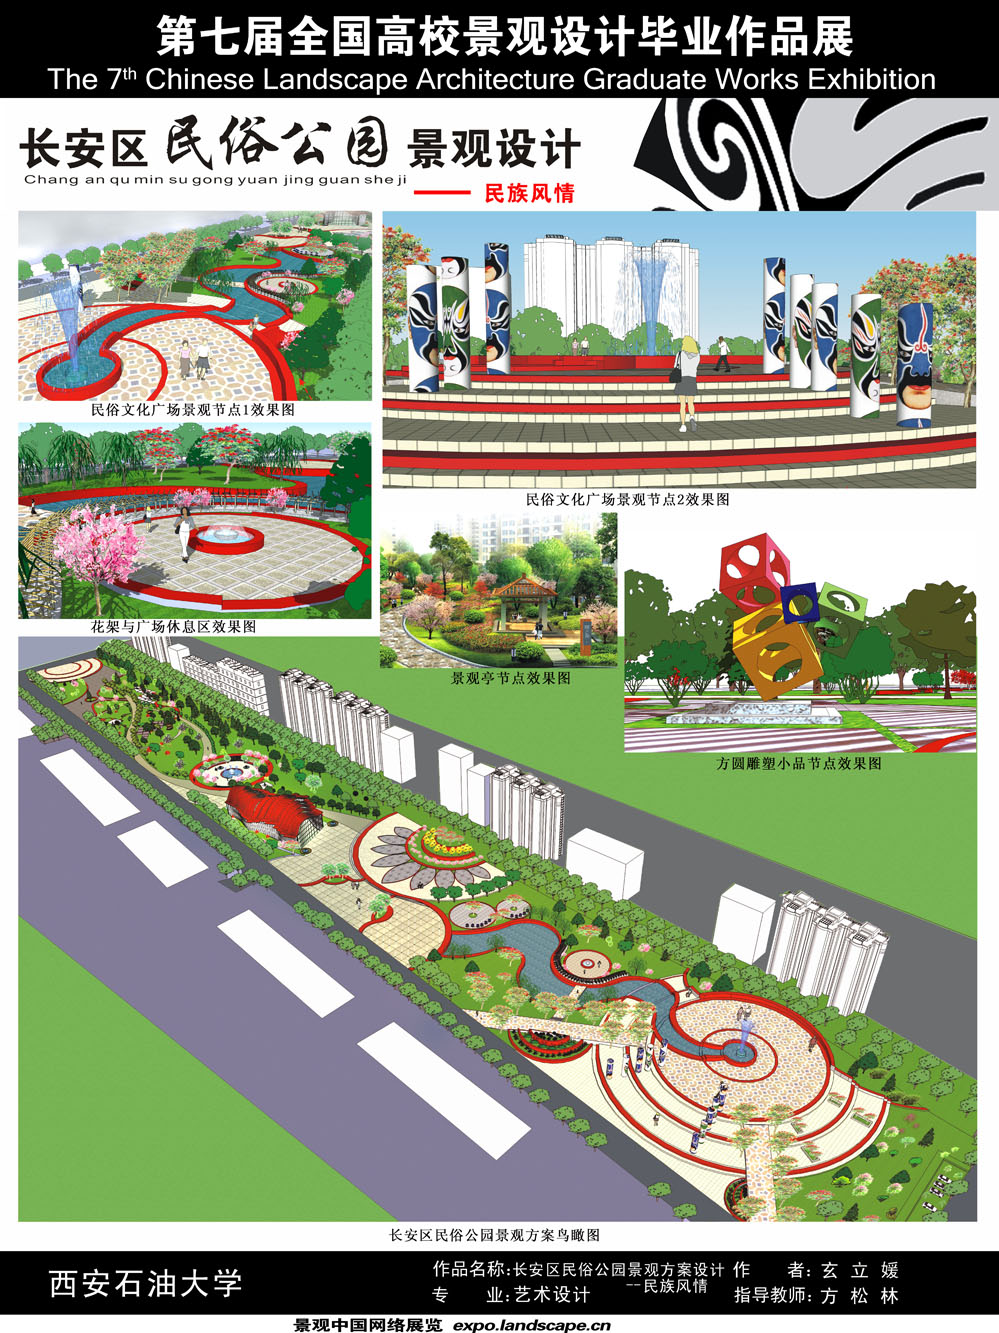 长安区民俗公园景观设计- 民族风情-2